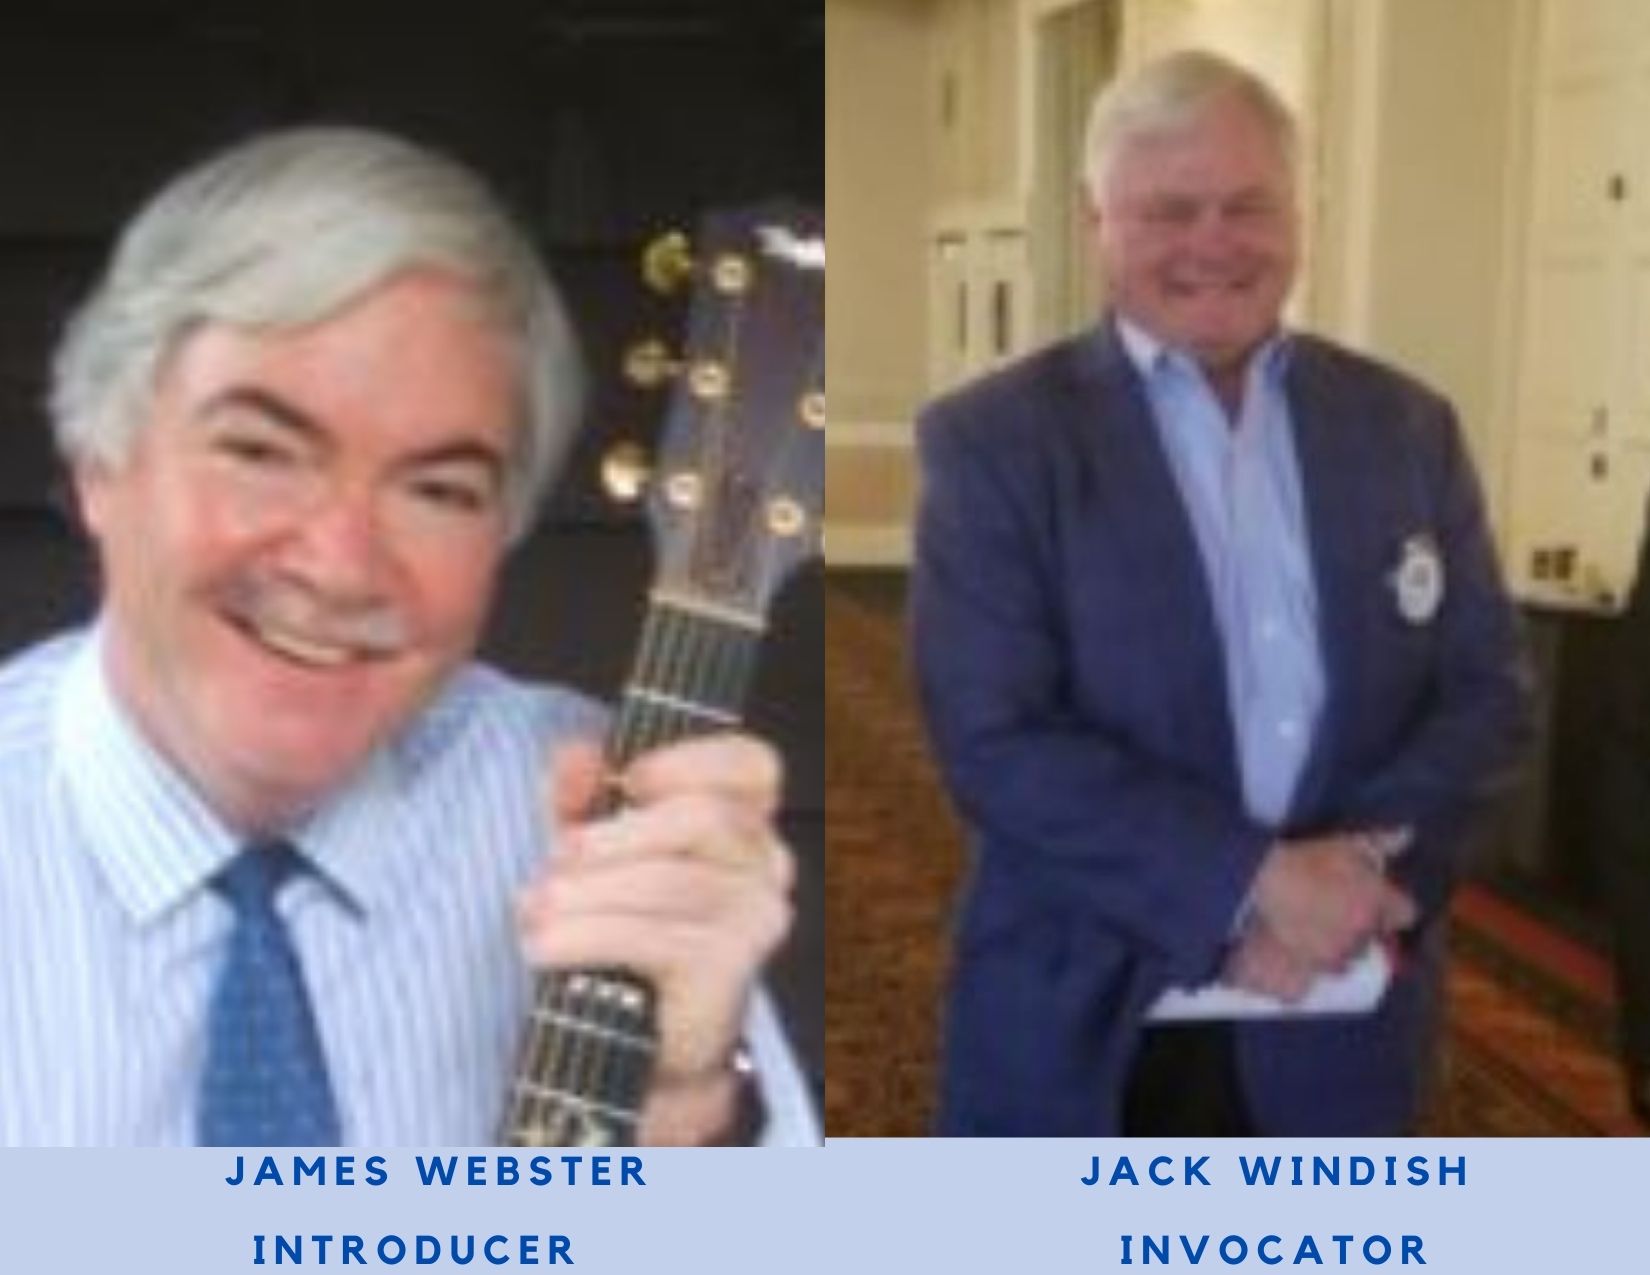 James Webster, Introducer and Jack Windish, Invocator June 17, 2021